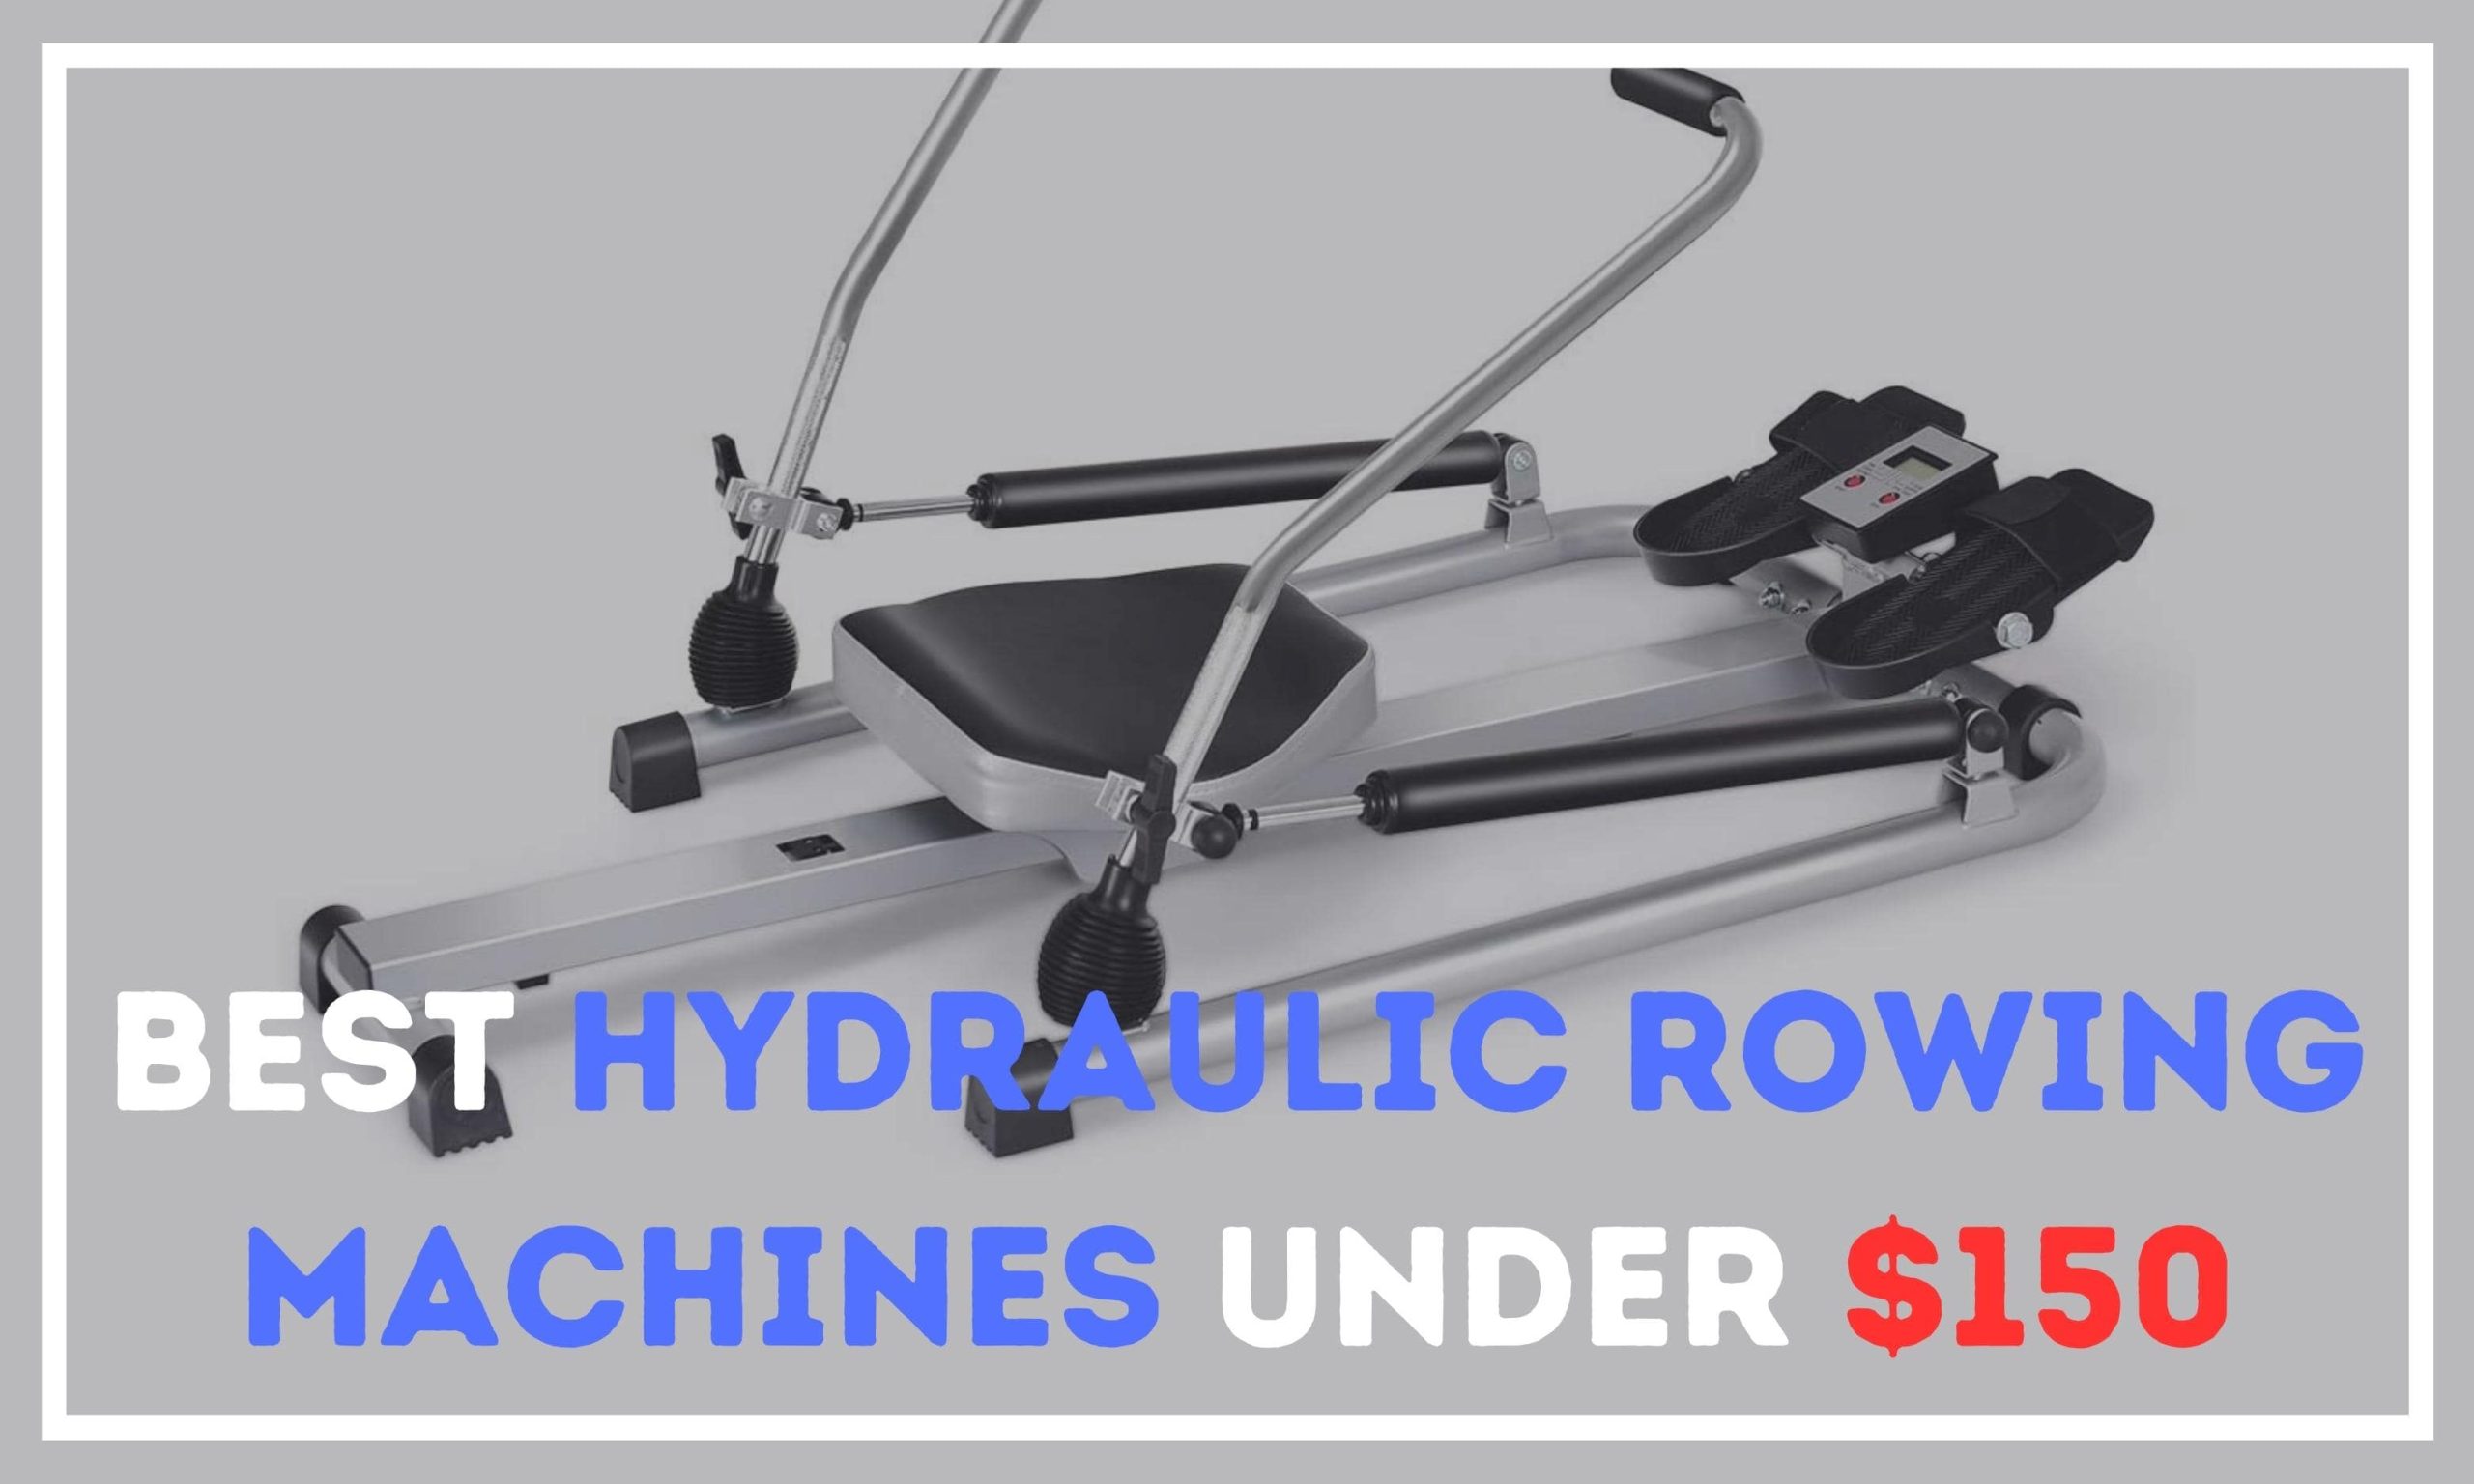 Best Hydraulic Rowing Machines Under $150